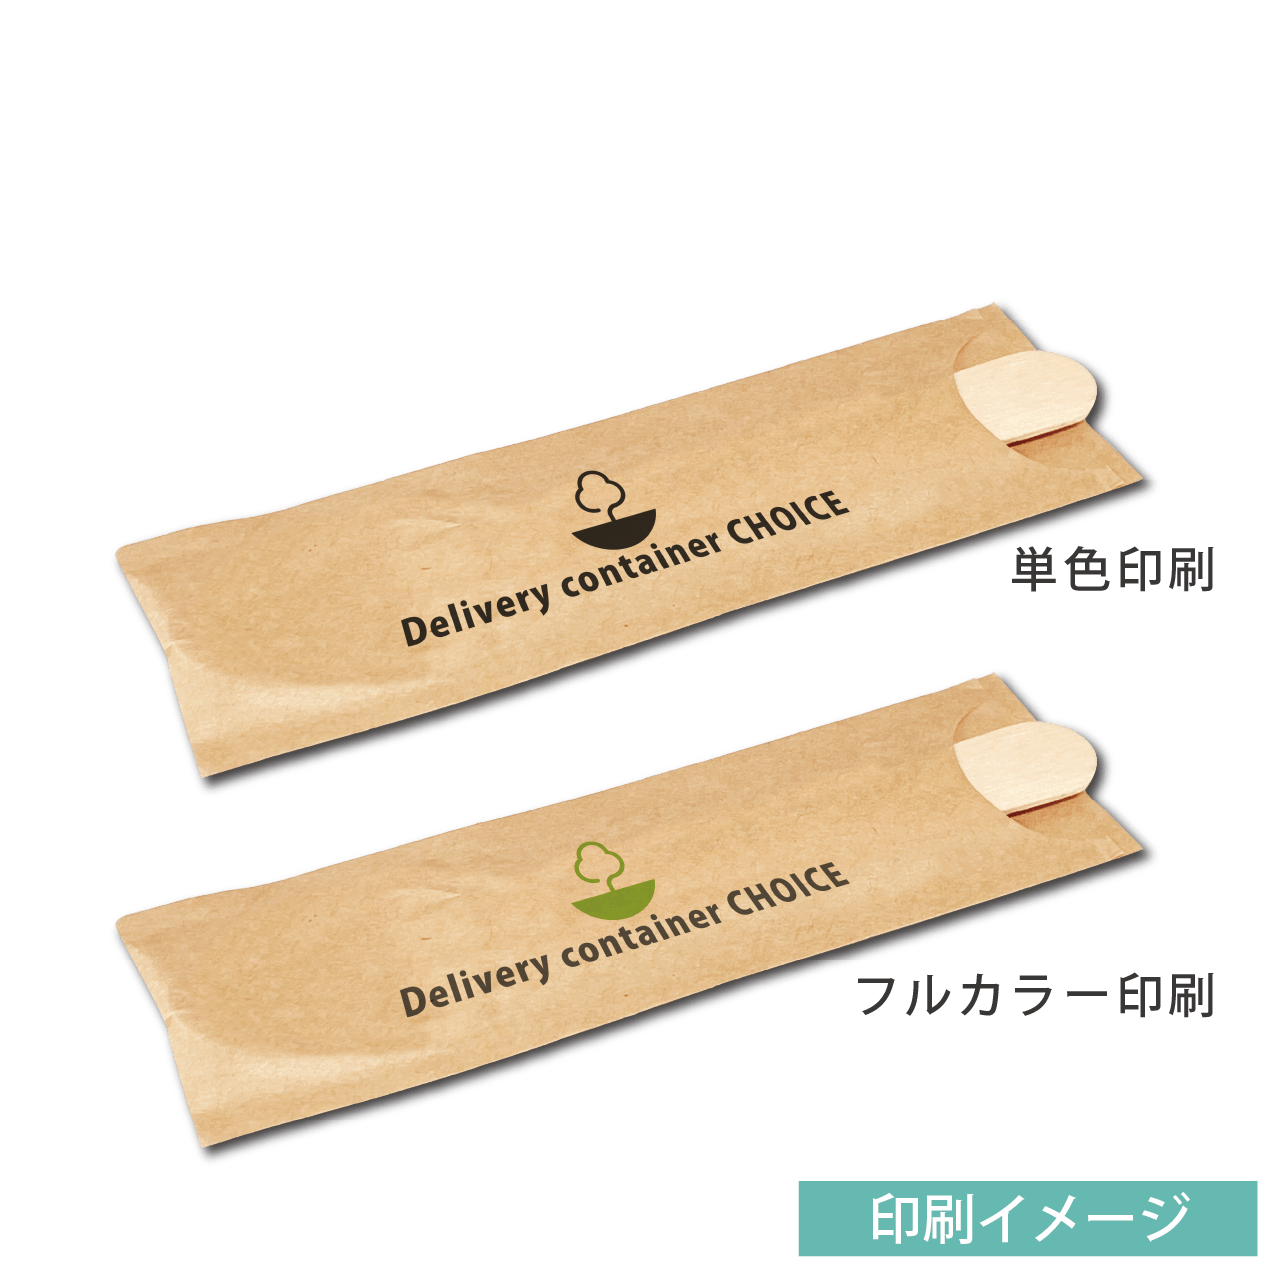 オリジナル箸袋にできる 使い捨て木製スプーン 袋入り 販促工房choice 青葉堂印刷